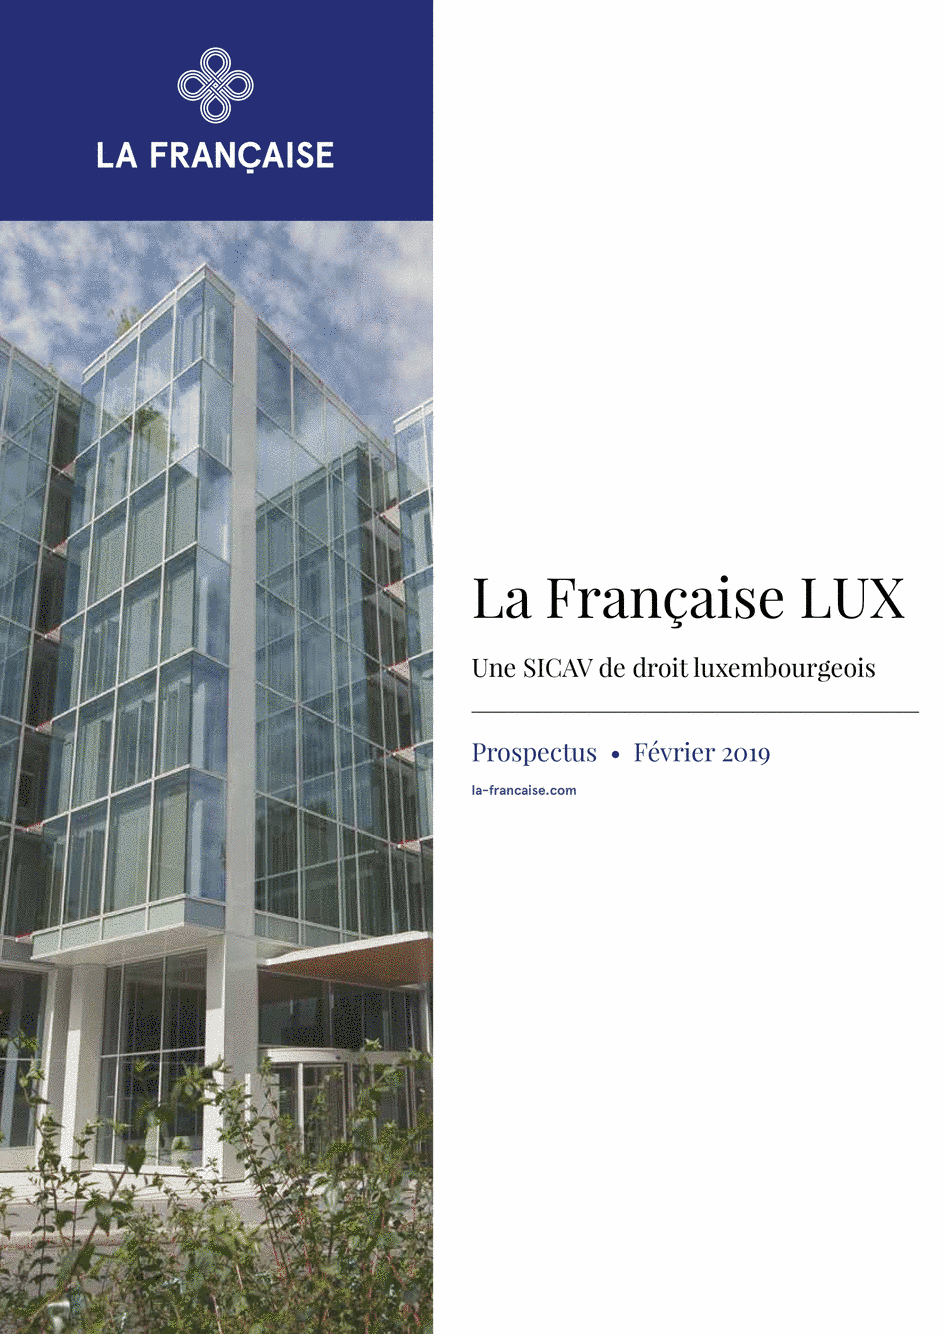 Prospectus La Française LUX - Forum Global Real Estate Securities - R (D) EUR - 01/12/2018 - French